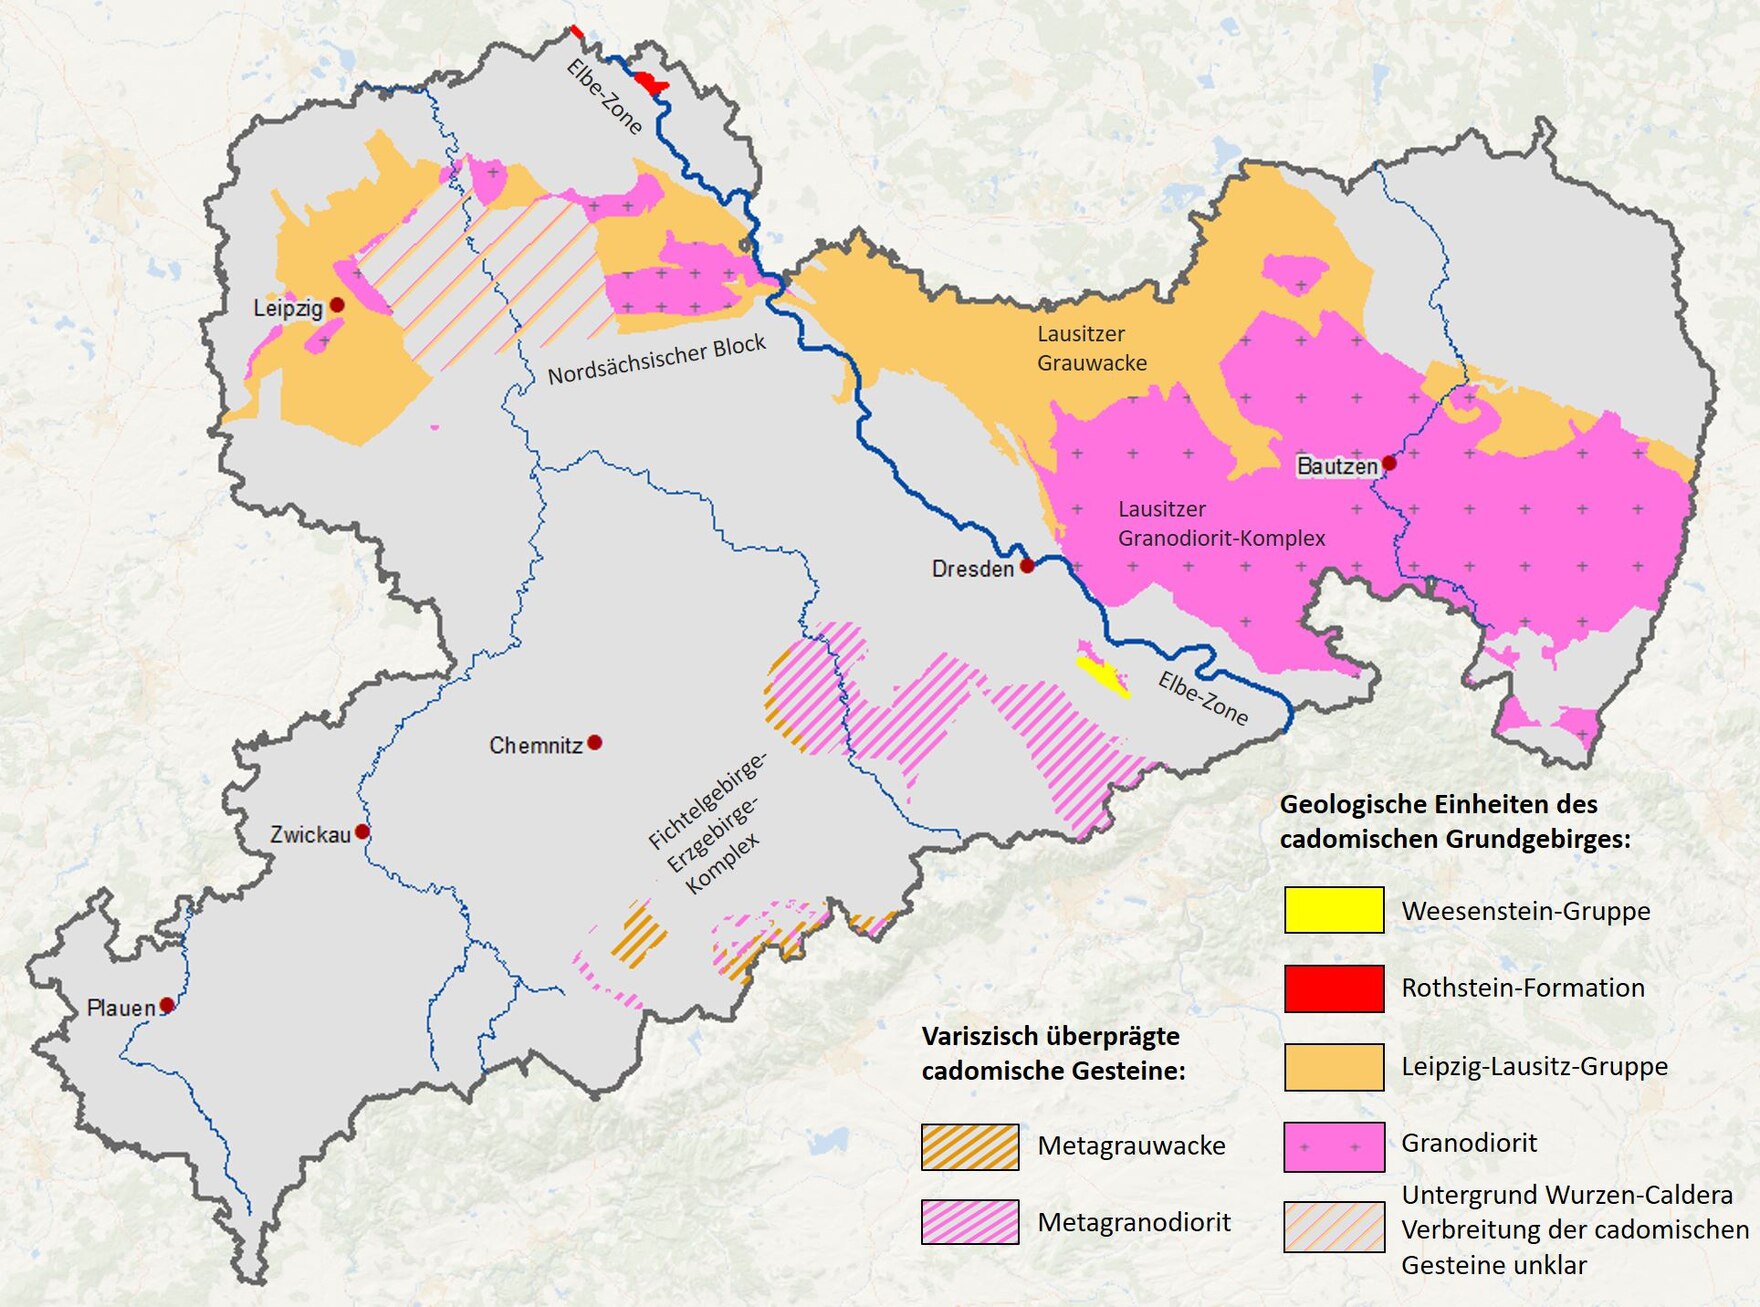 Karte der Gesteine des cadomischen Grundgebirges in Sachsen.